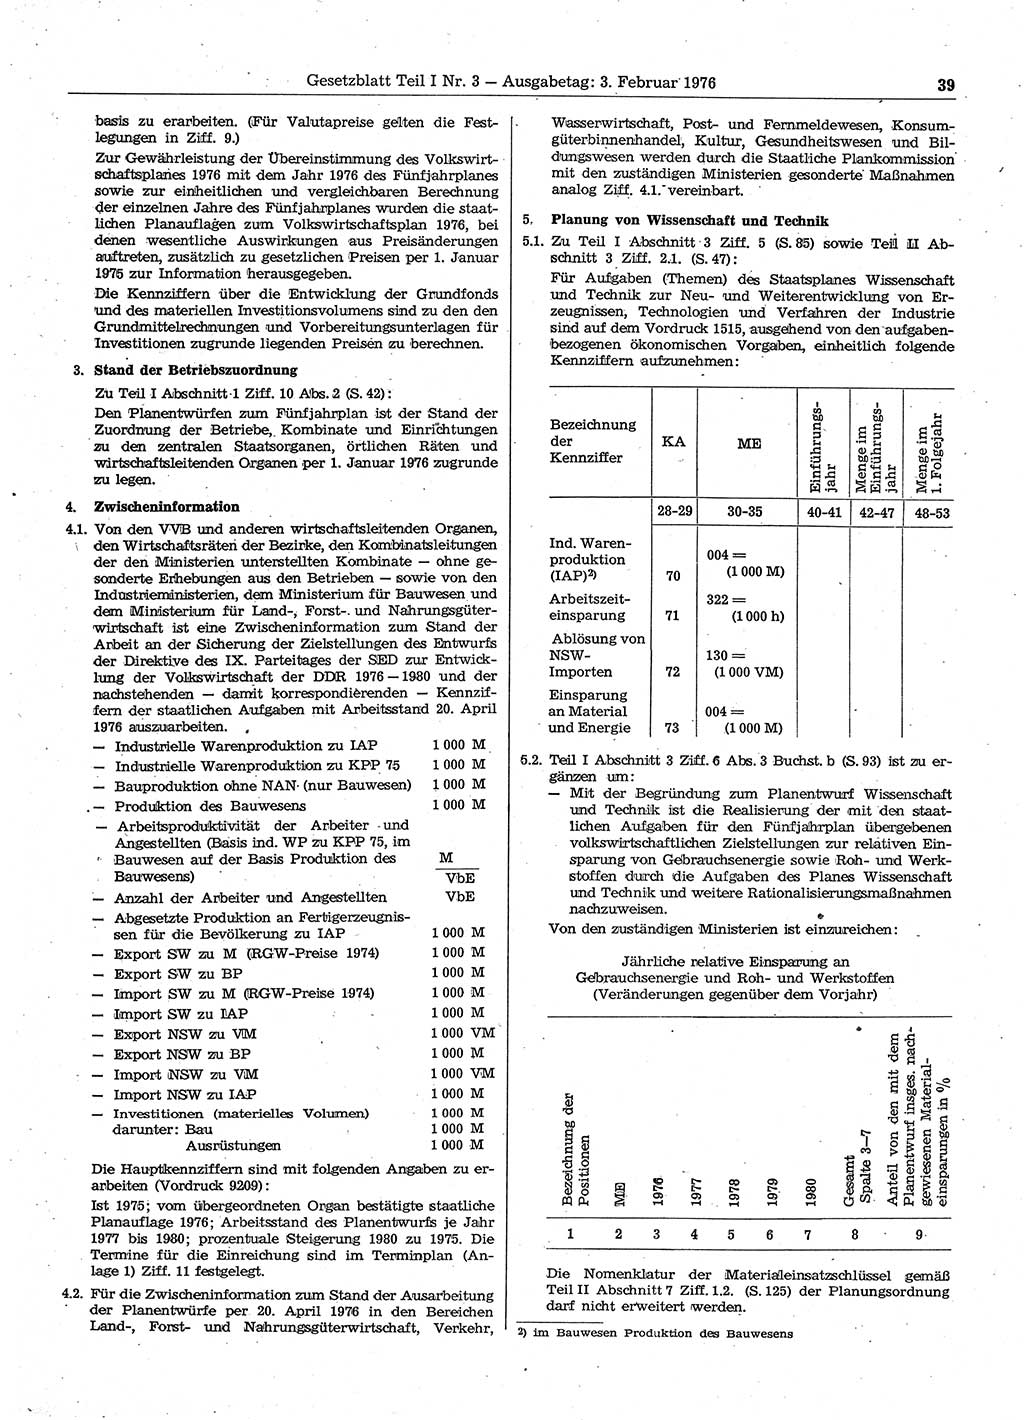 Gesetzblatt (GBl.) der Deutschen Demokratischen Republik (DDR) Teil Ⅰ 1976, Seite 39 (GBl. DDR Ⅰ 1976, S. 39)